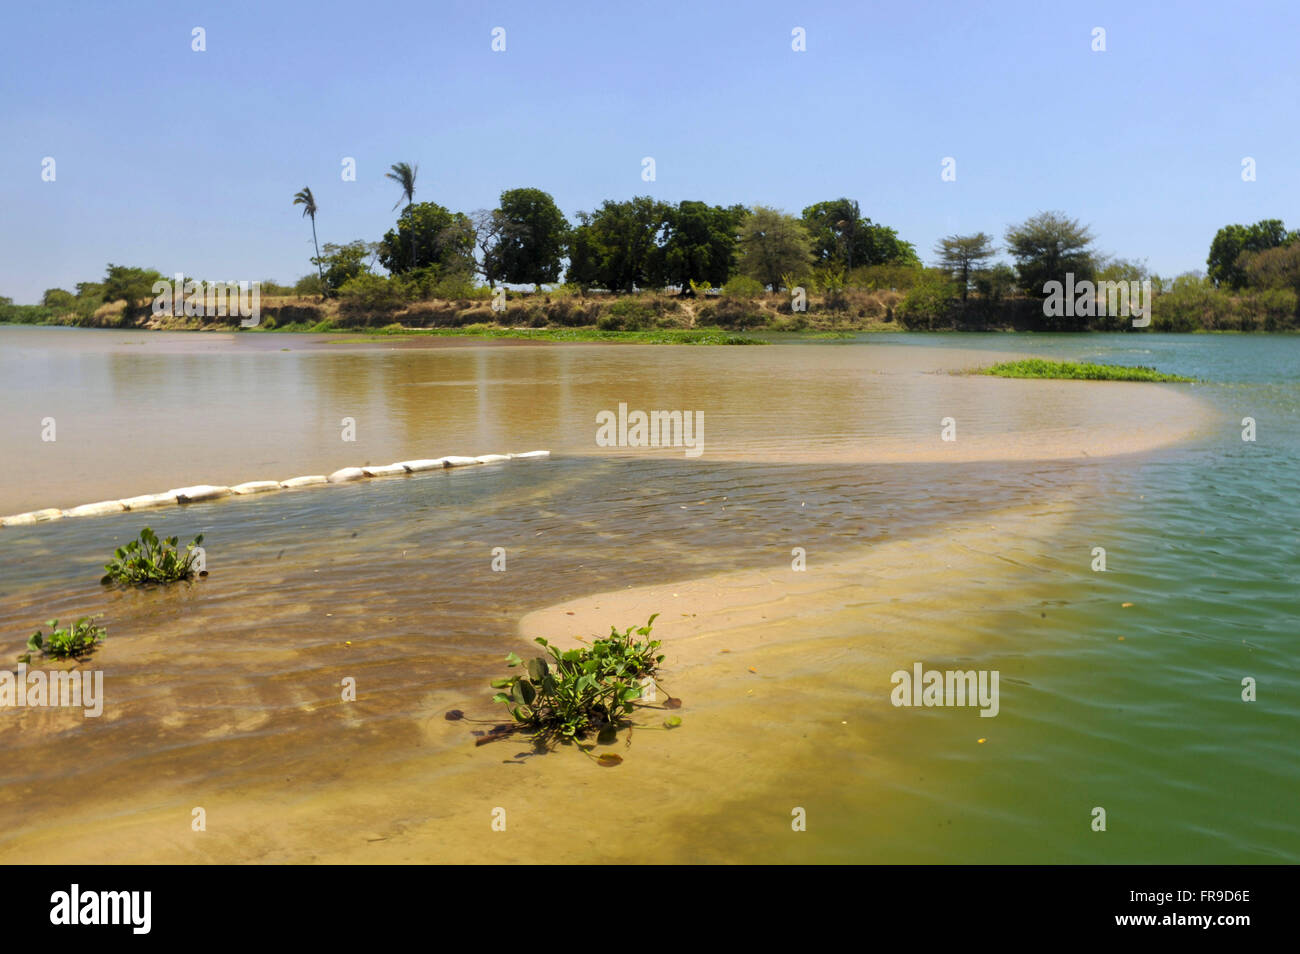 Encontro dos rios - local onde os rios Poti à direita e Paraniba à esquerda se encontram Stock Photo